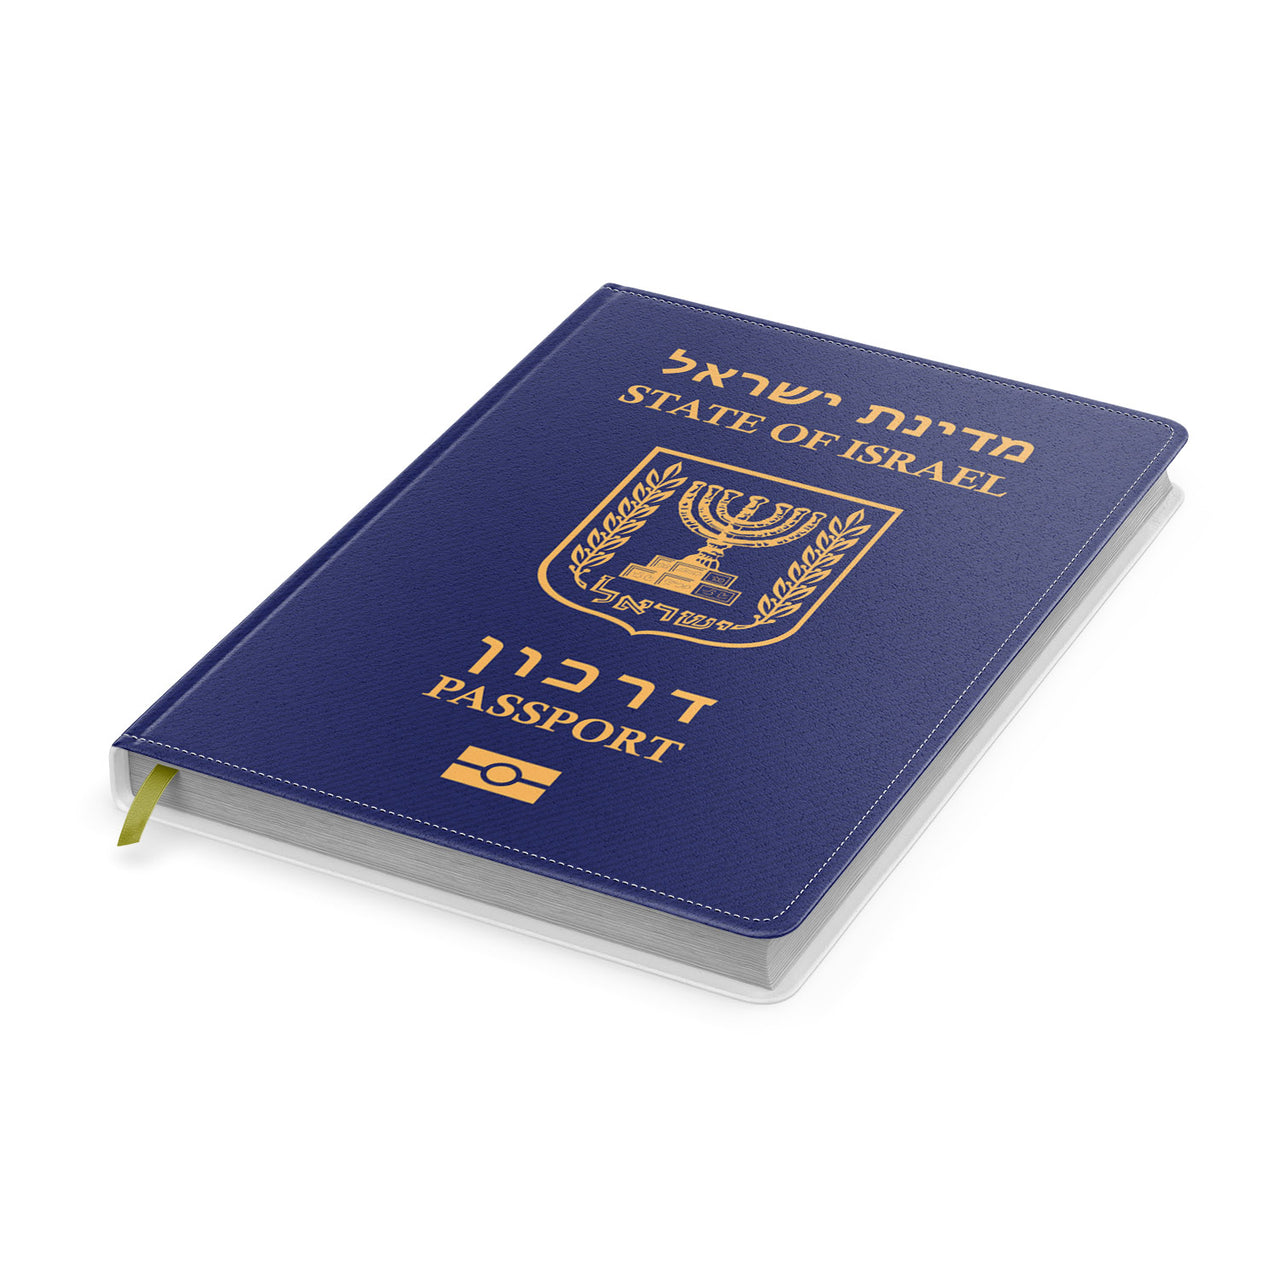 Israel Passport Designed Notebooks